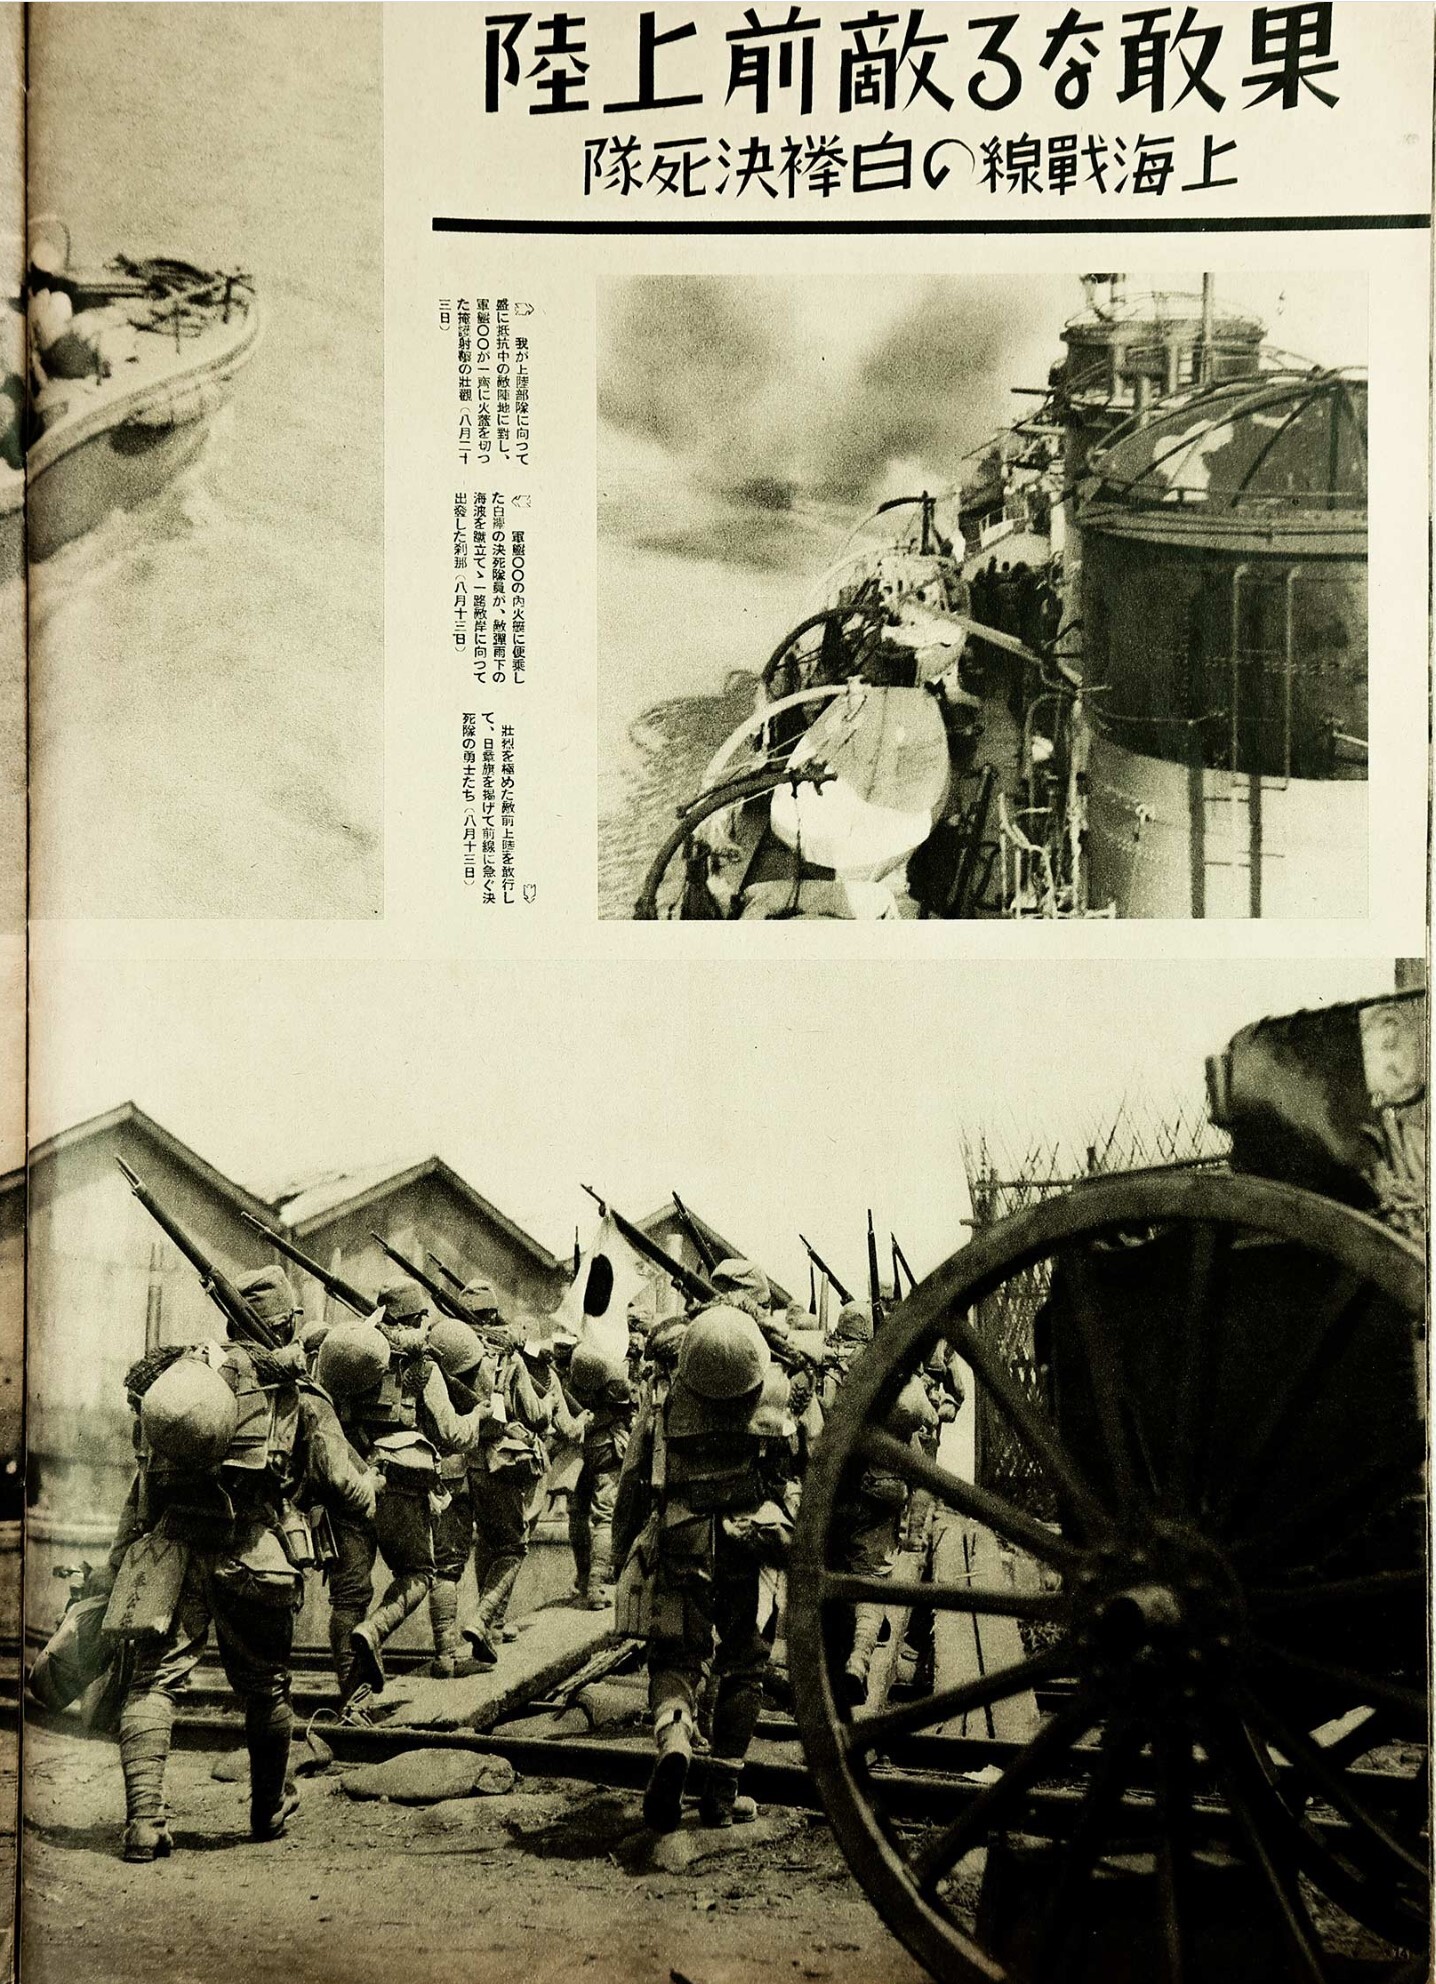 准备向月浦,罗店发起进攻,宝山县城正好处在日军两个师团战线的结合部